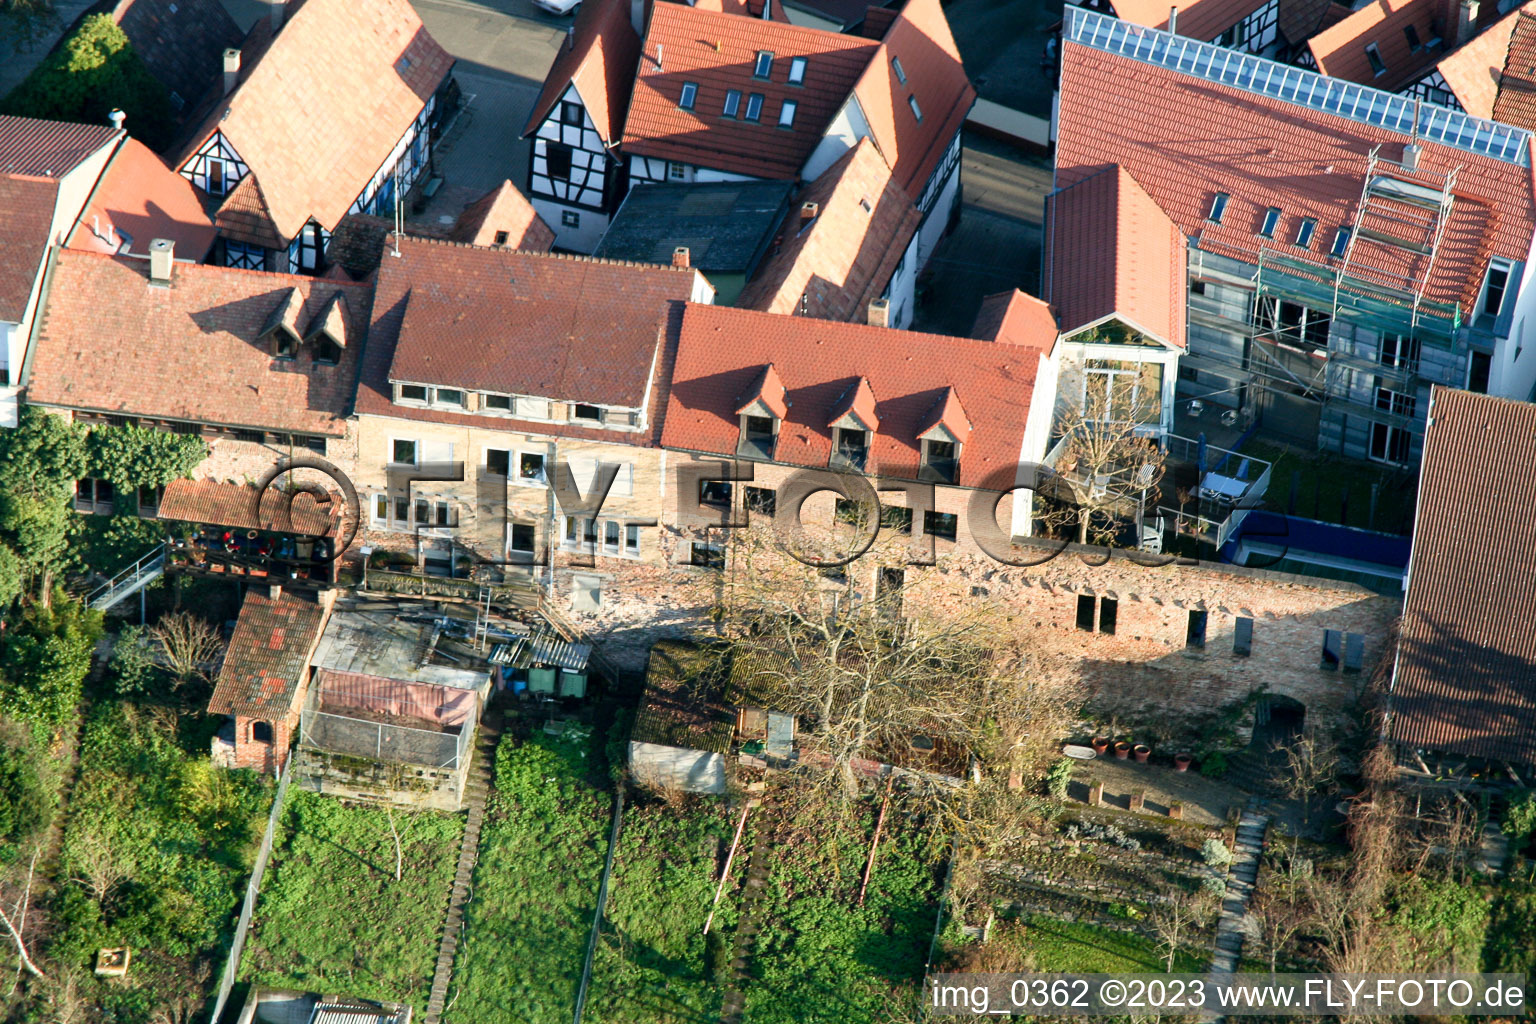 Jockgrim Ludwigstr im Bundesland Rheinland-Pfalz, Deutschland von einer Drohne aus